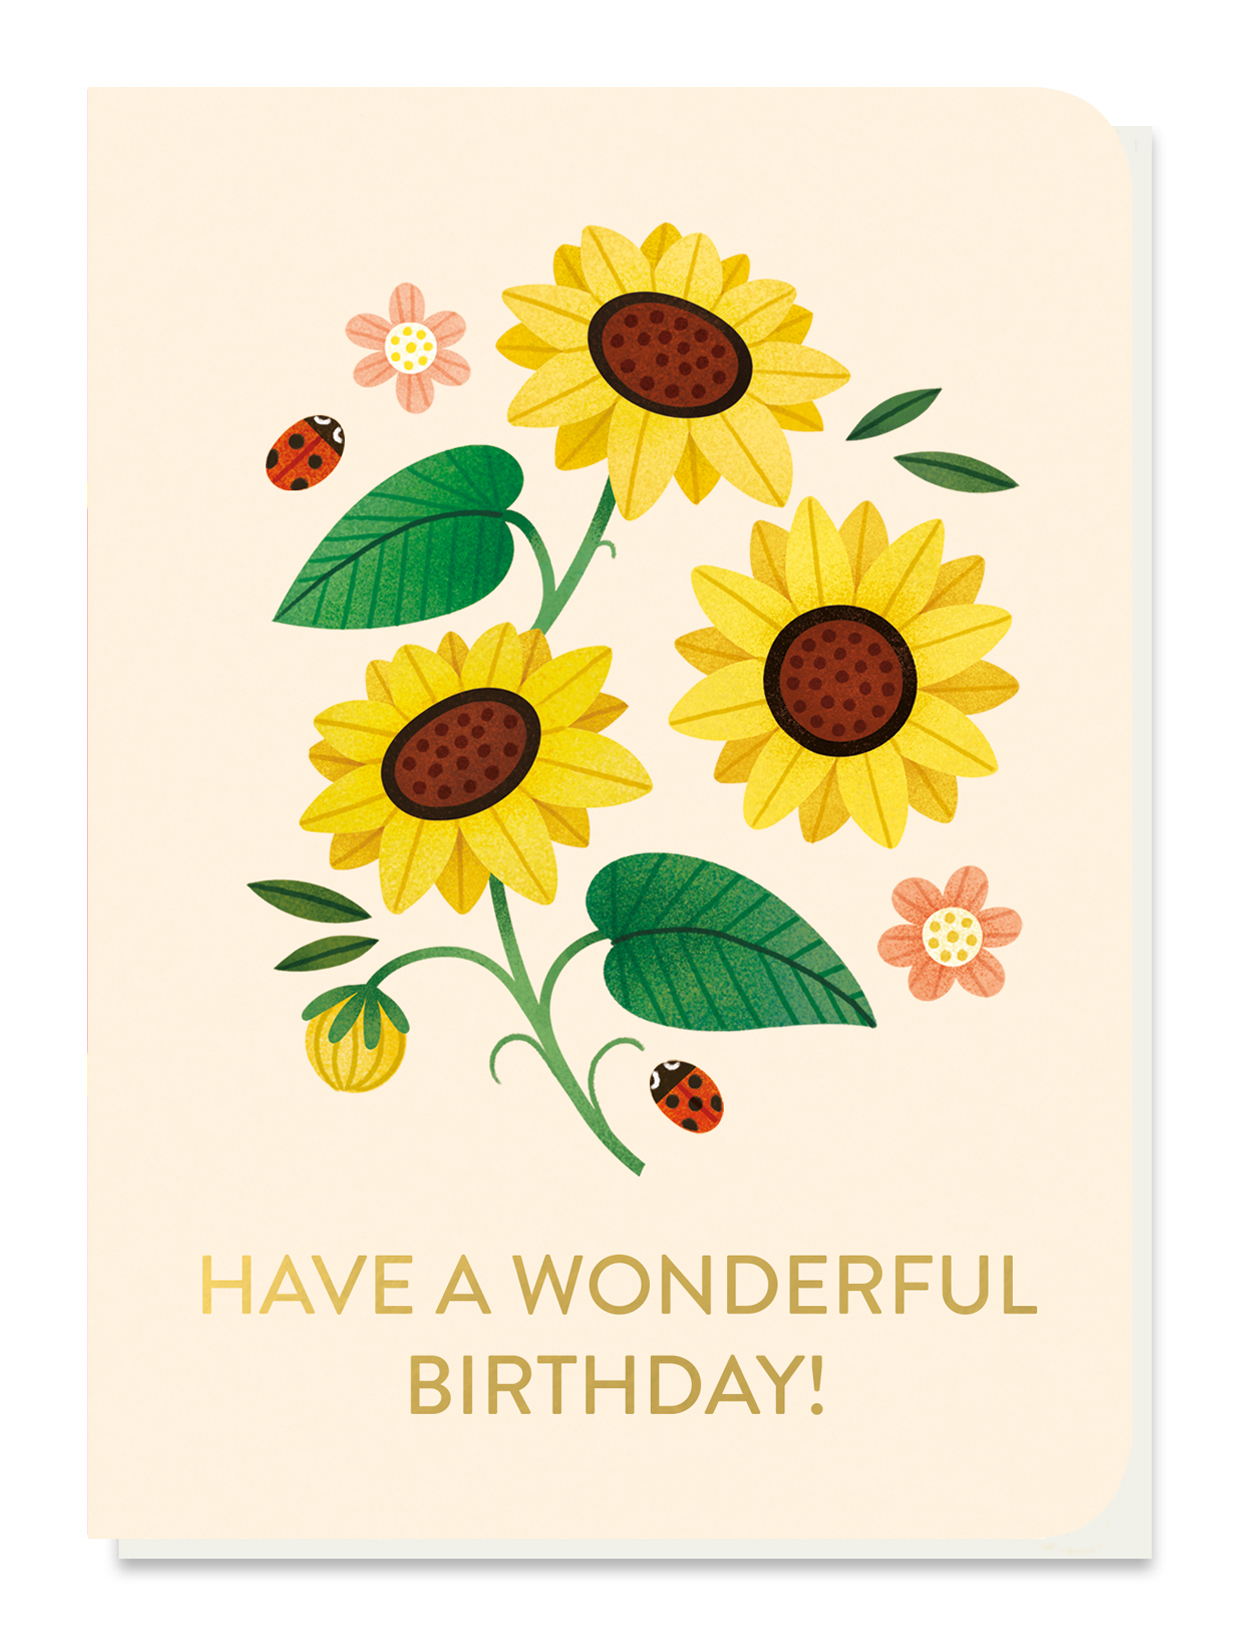 Dwarf sunflowers birthday card with seed sticks by stormy knight